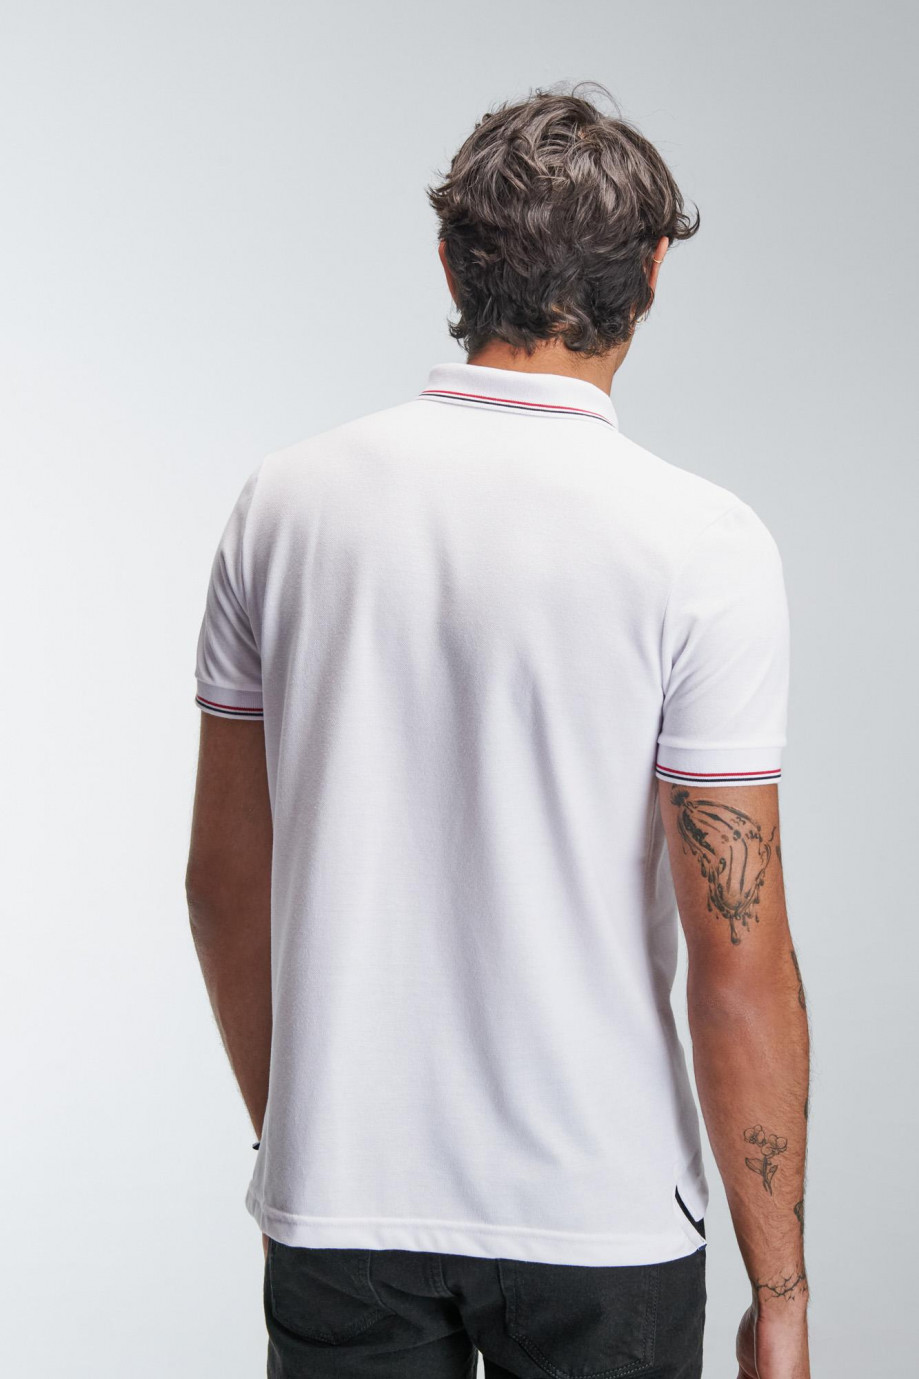 Camiseta Polo unicolor con cuello y puños tejido